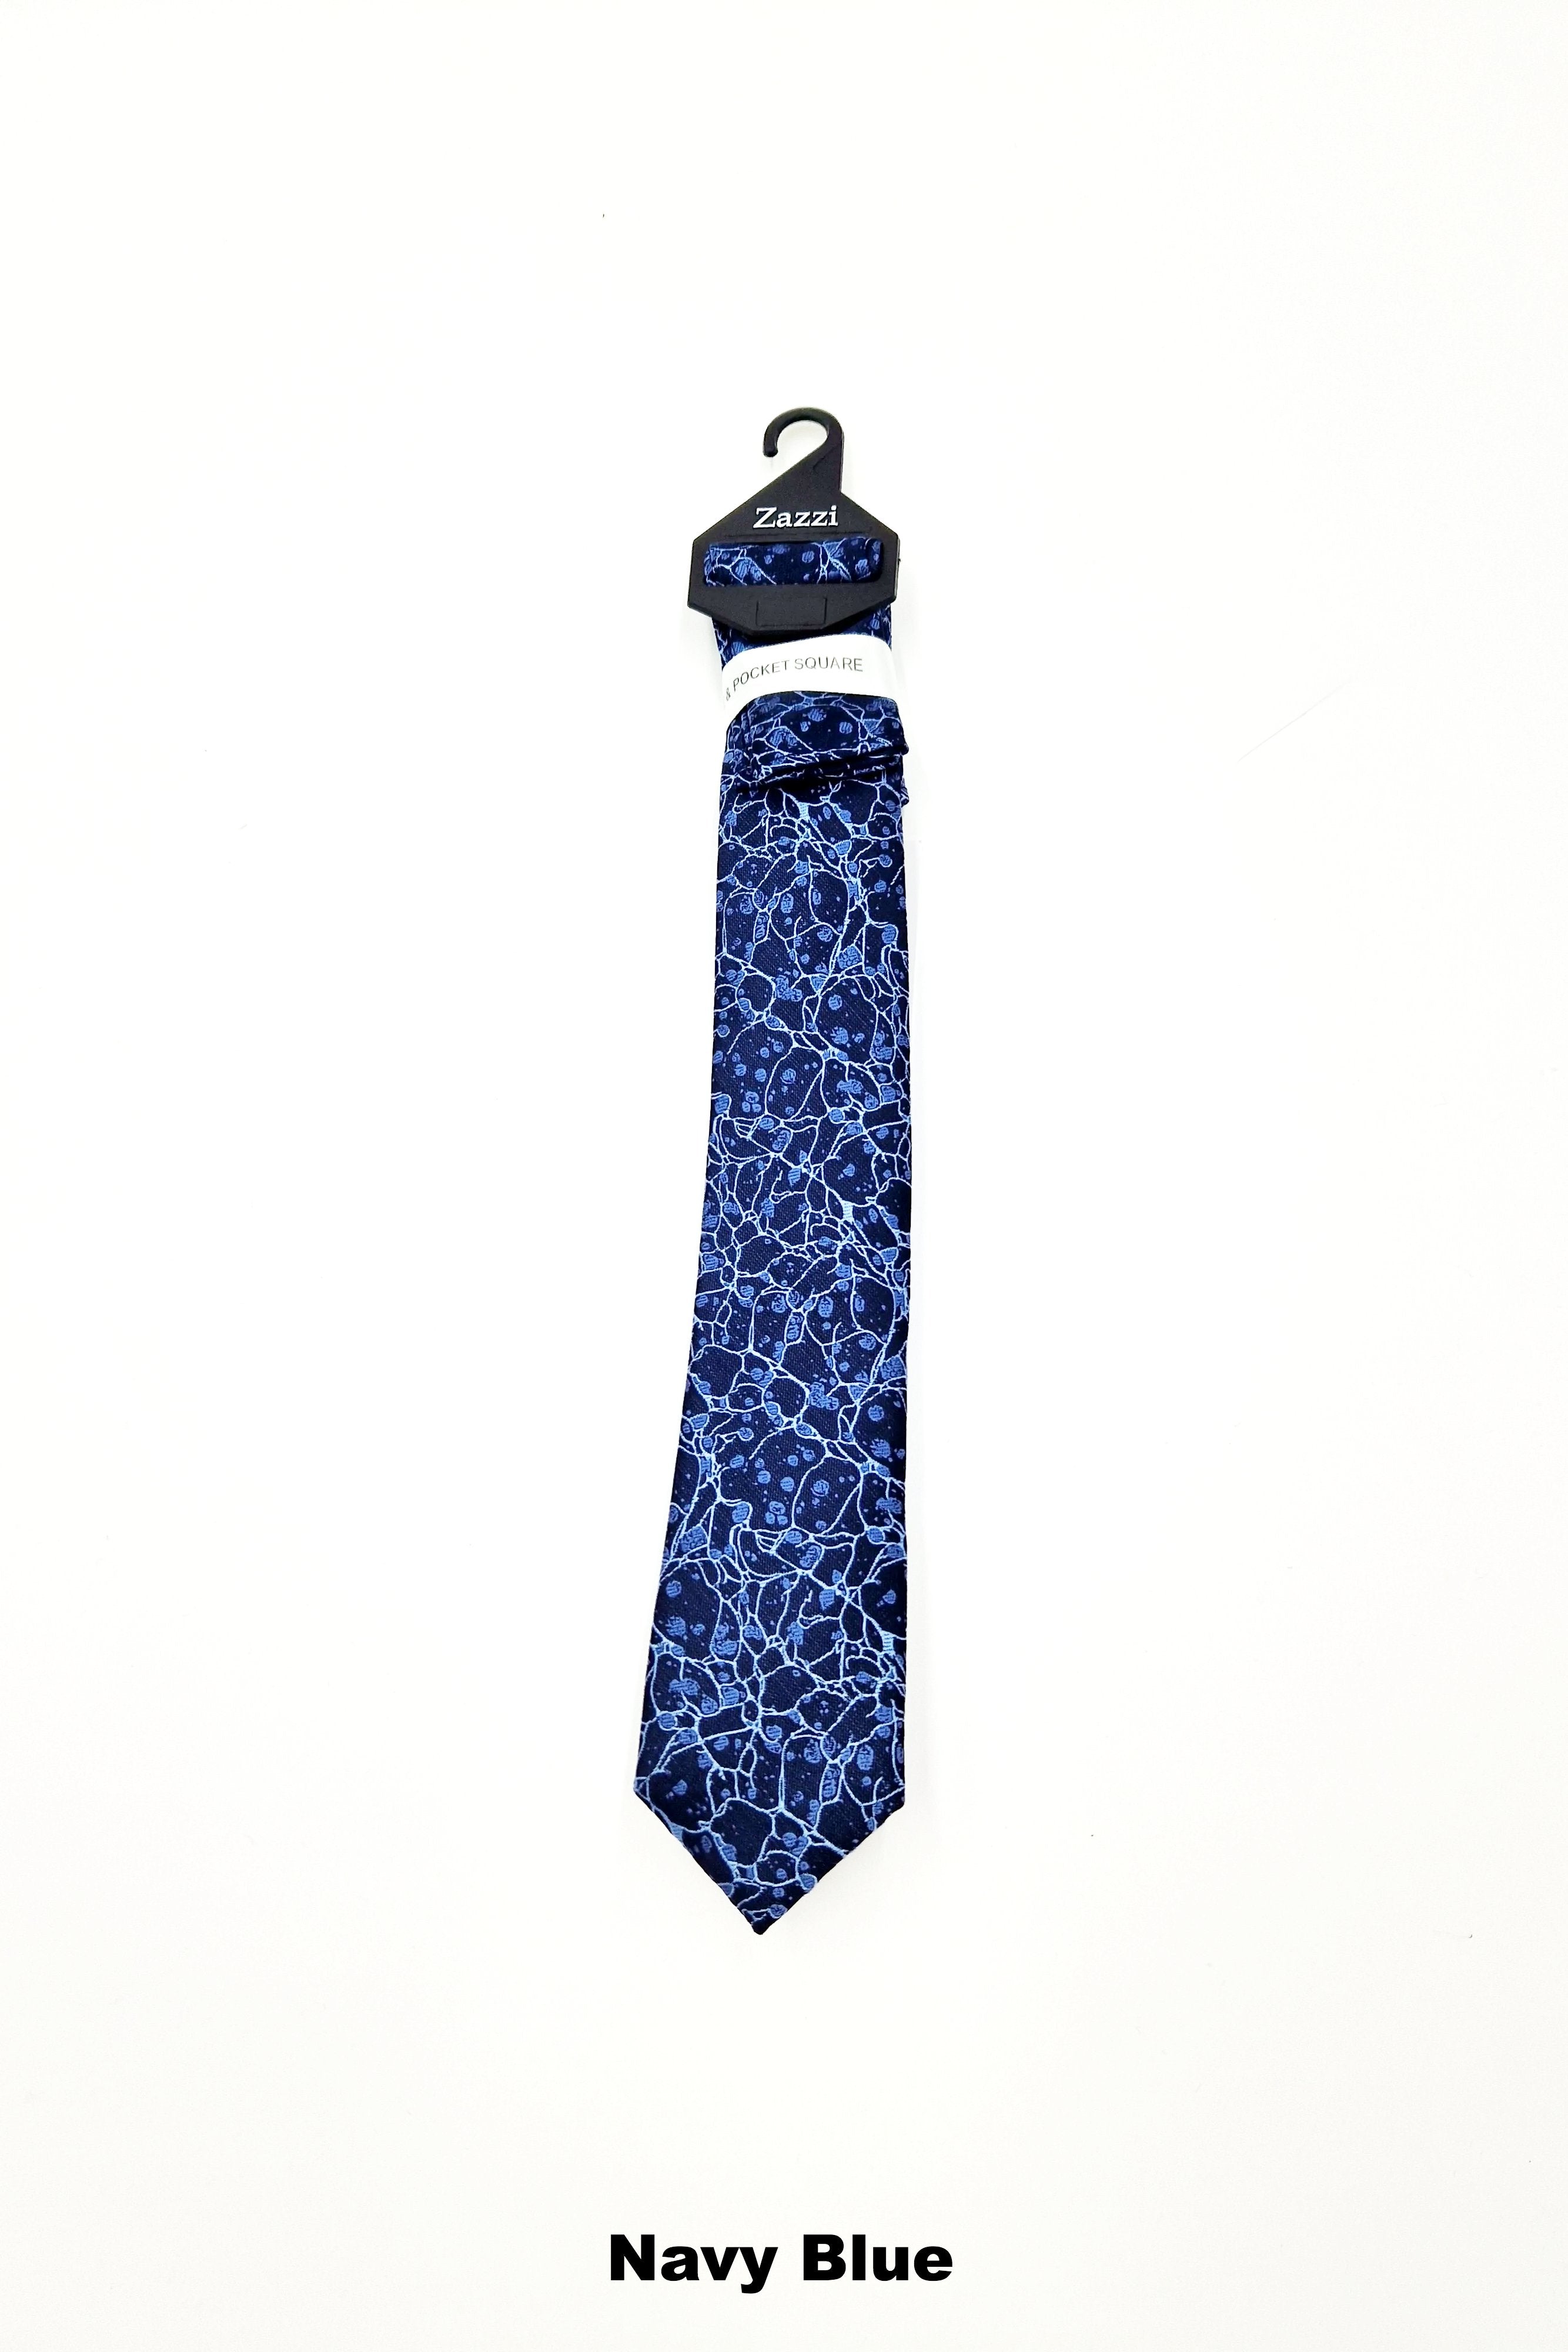 Zazzi Pattern Boys Tie & Pocket Square Navy Blue